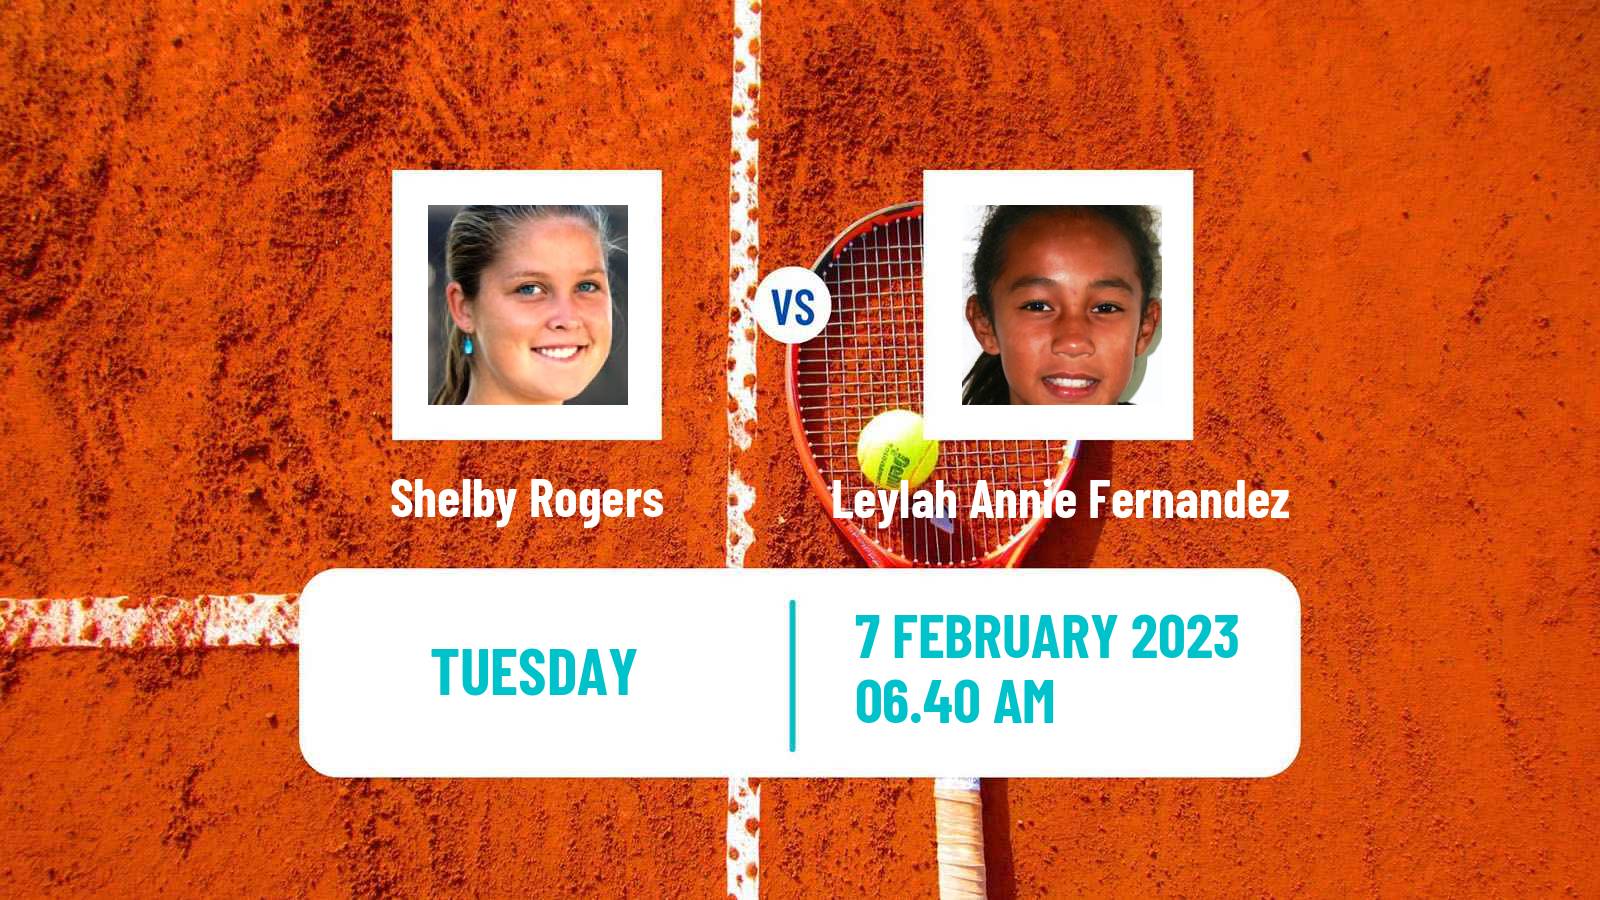 Tennis WTA Abu Dhabi Shelby Rogers - Leylah Annie Fernandez